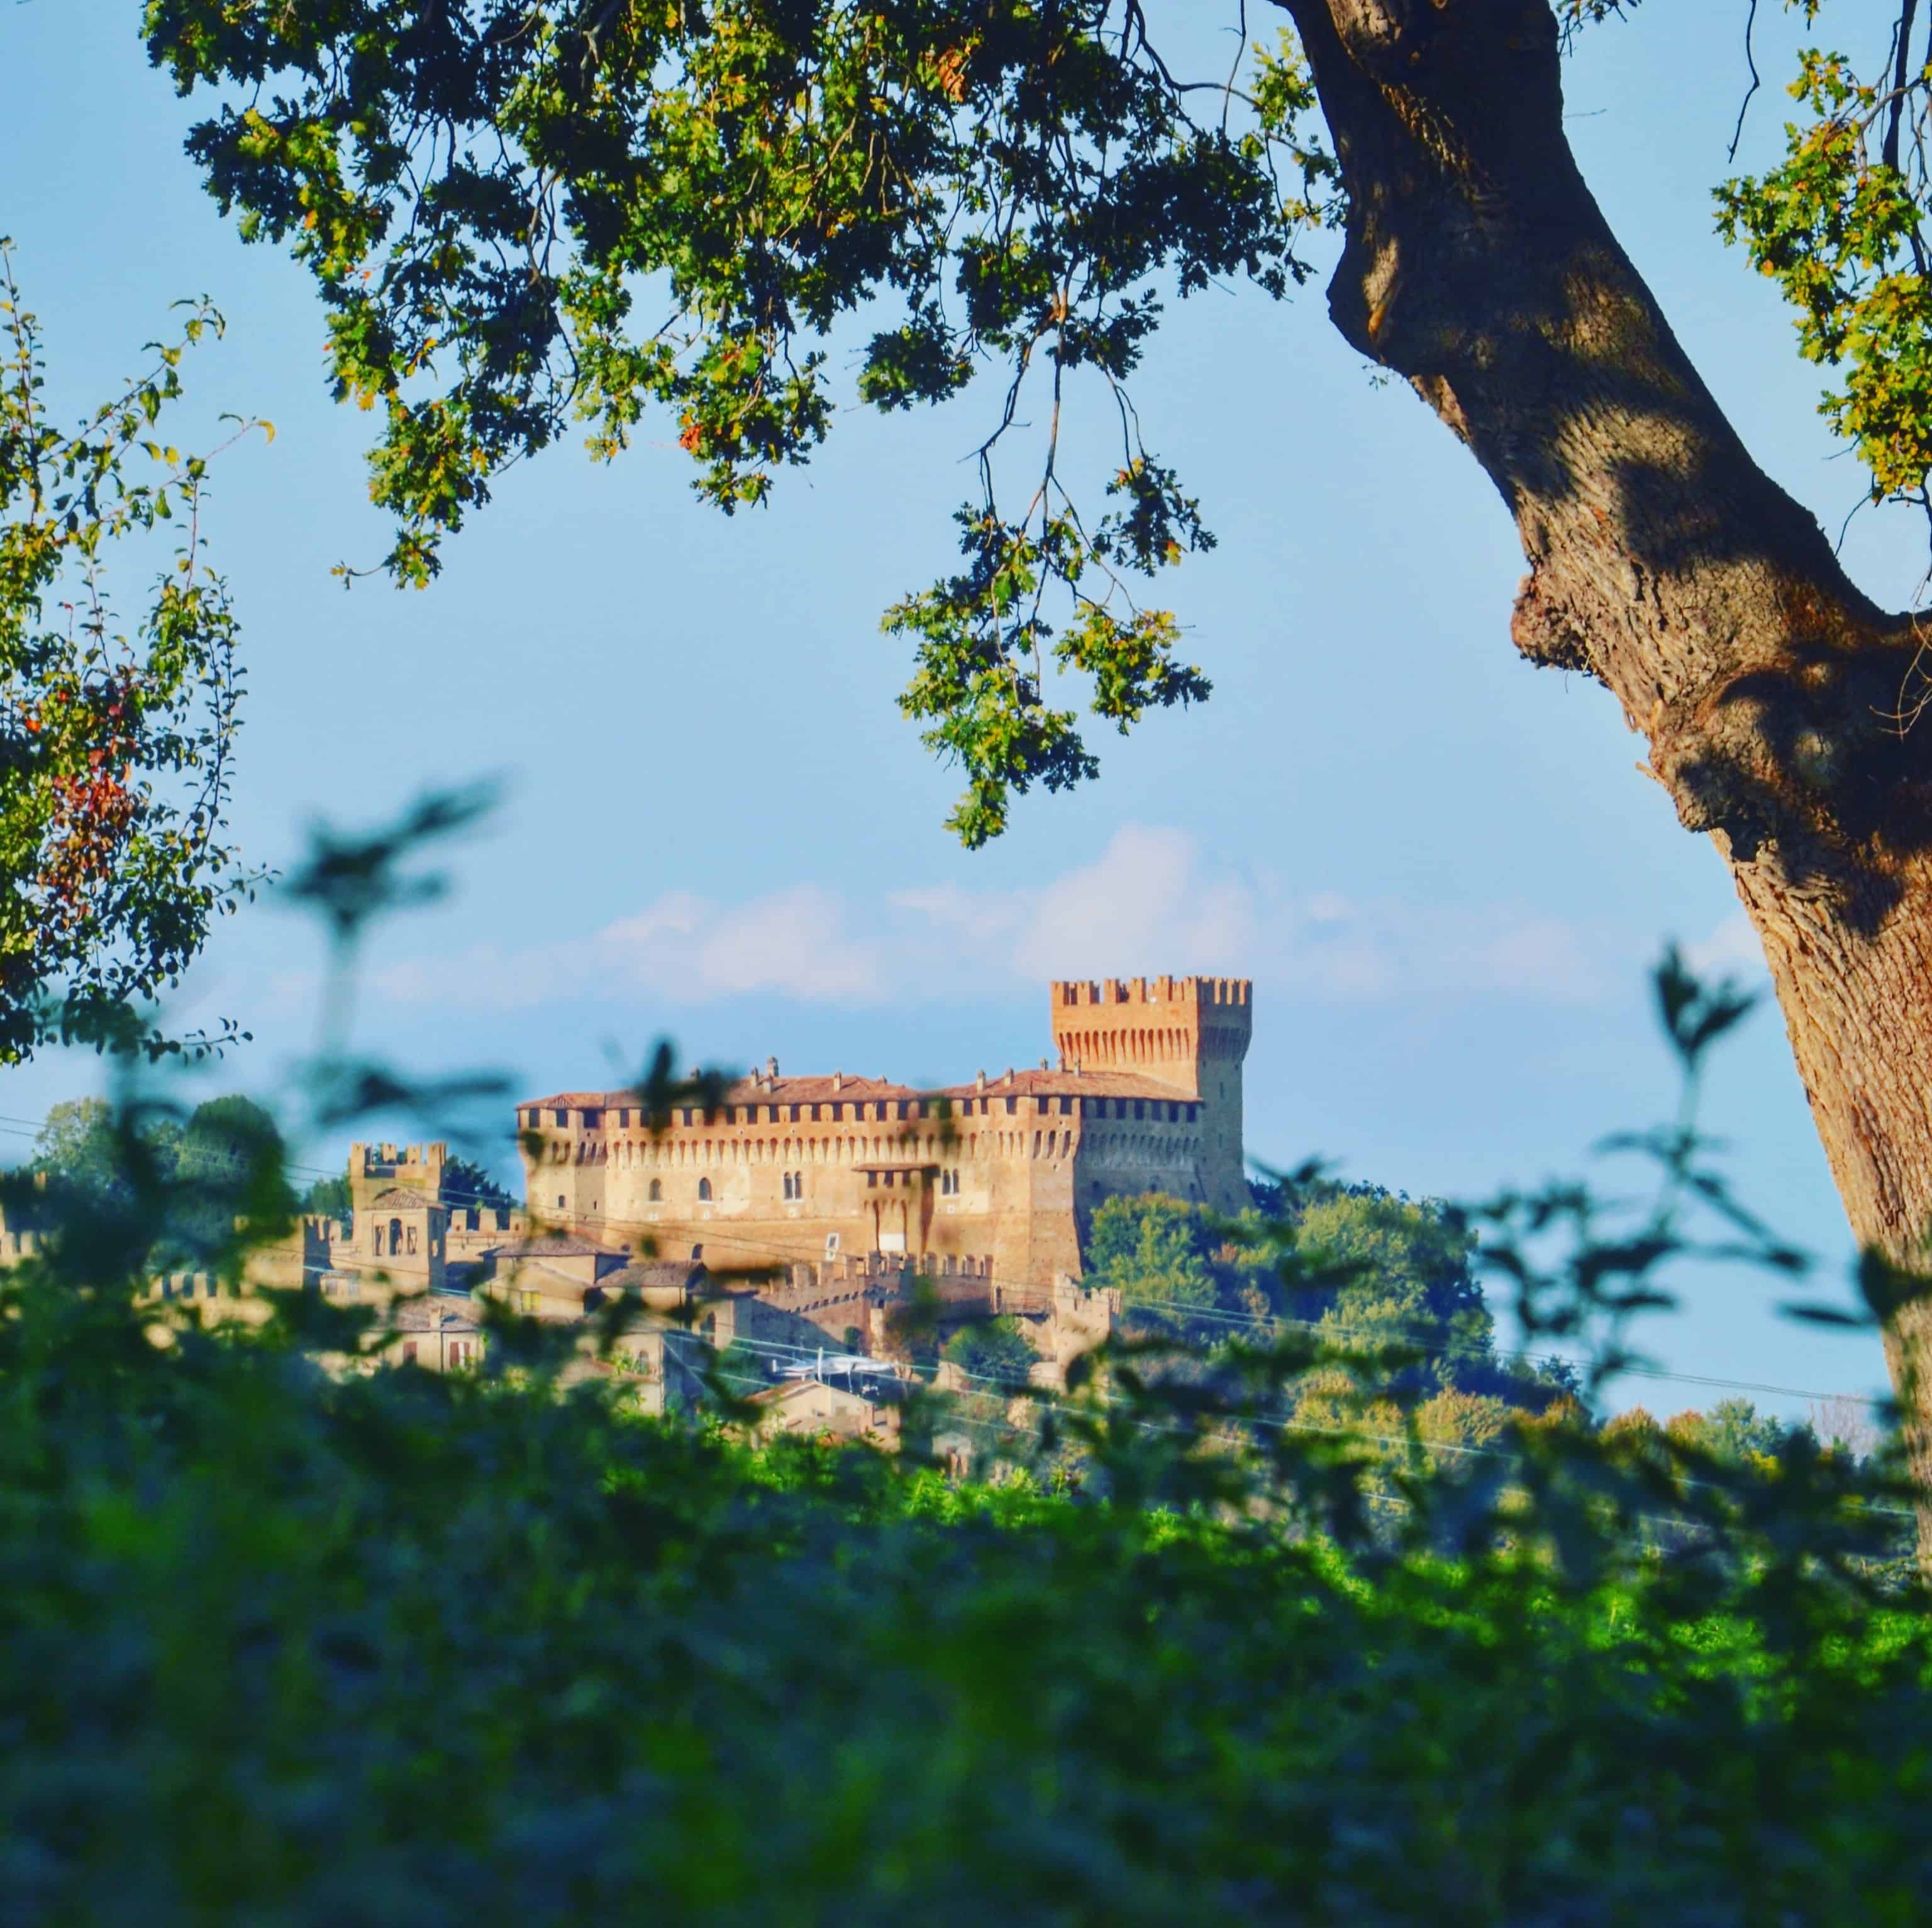 Il maestoso Castello di Gradara fotografato dalla campagna gradarese  | Andrea Albertini - e-borghi Community